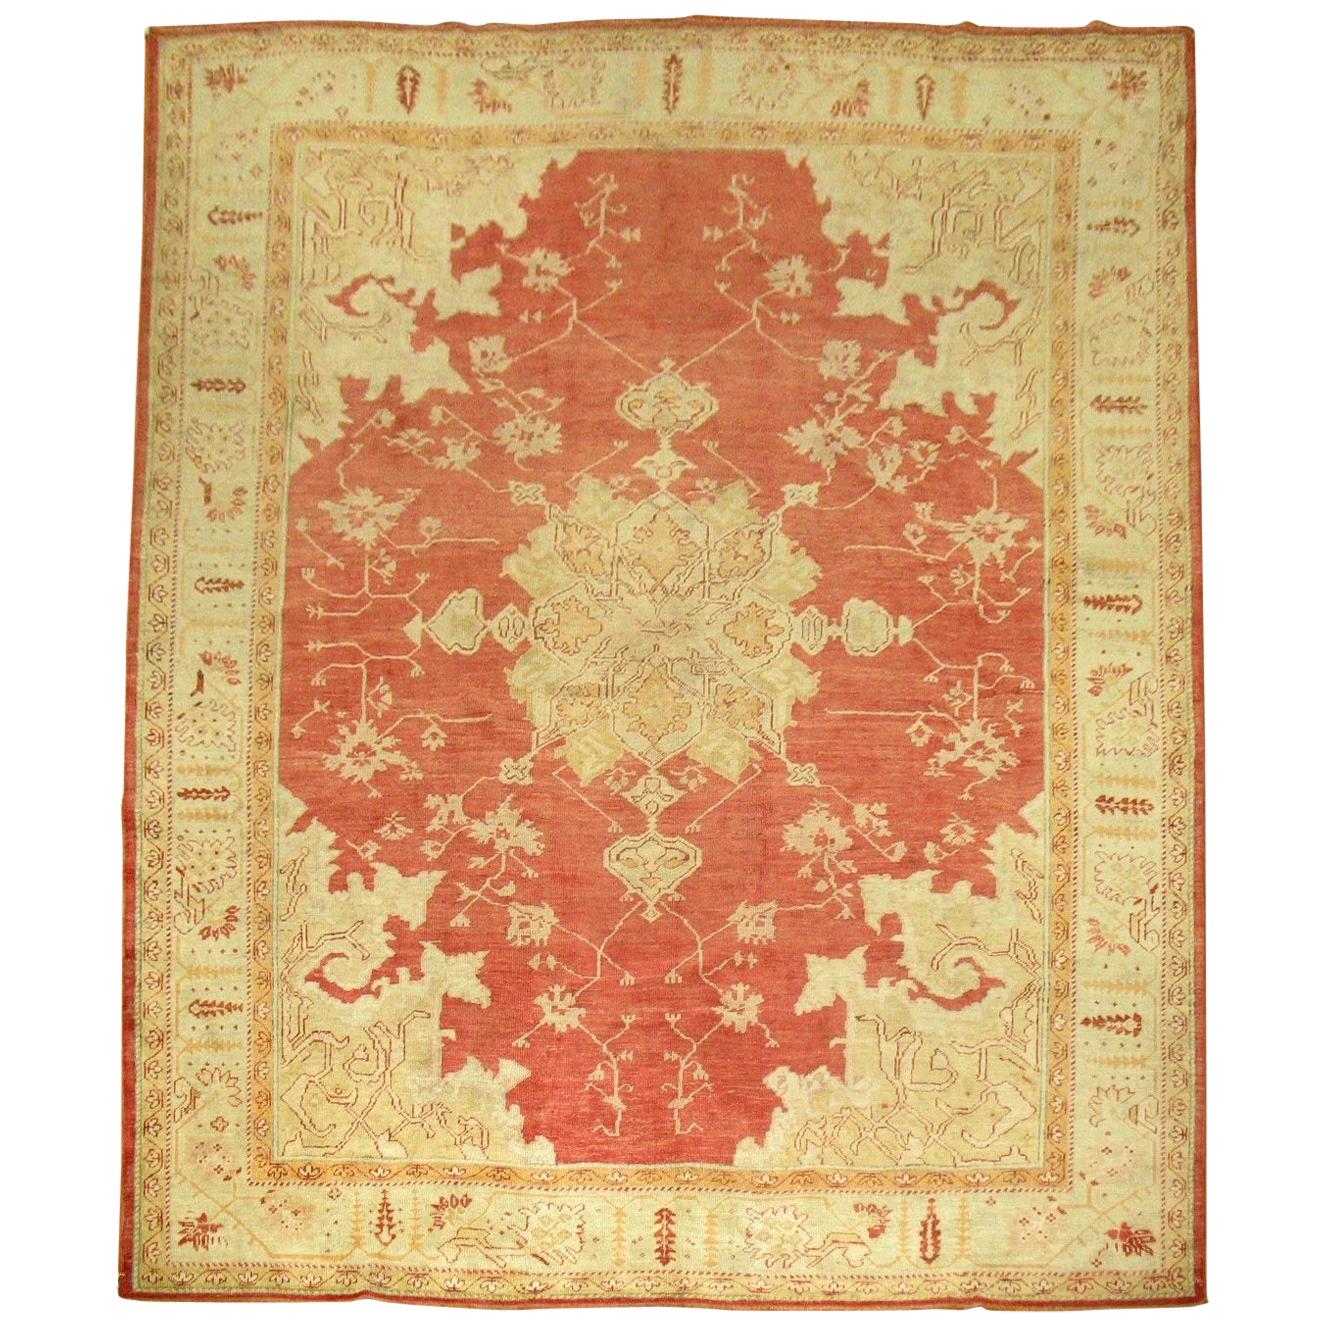 Roter antiker türkischer Oushak-Teppich